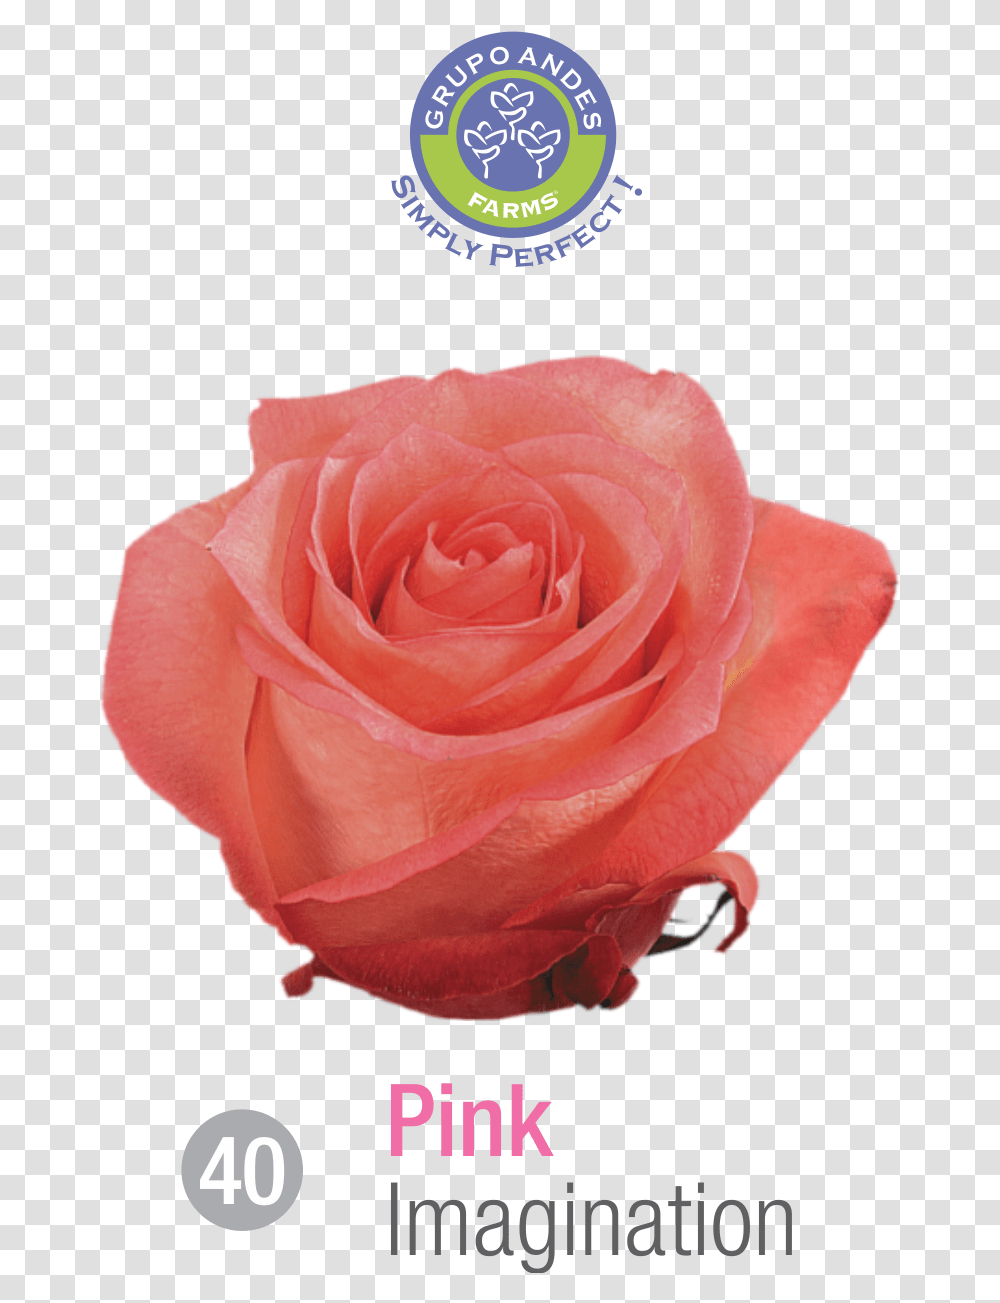 Rosa Variedad Imagination, Rose, Flower, Plant, Blossom Transparent Png